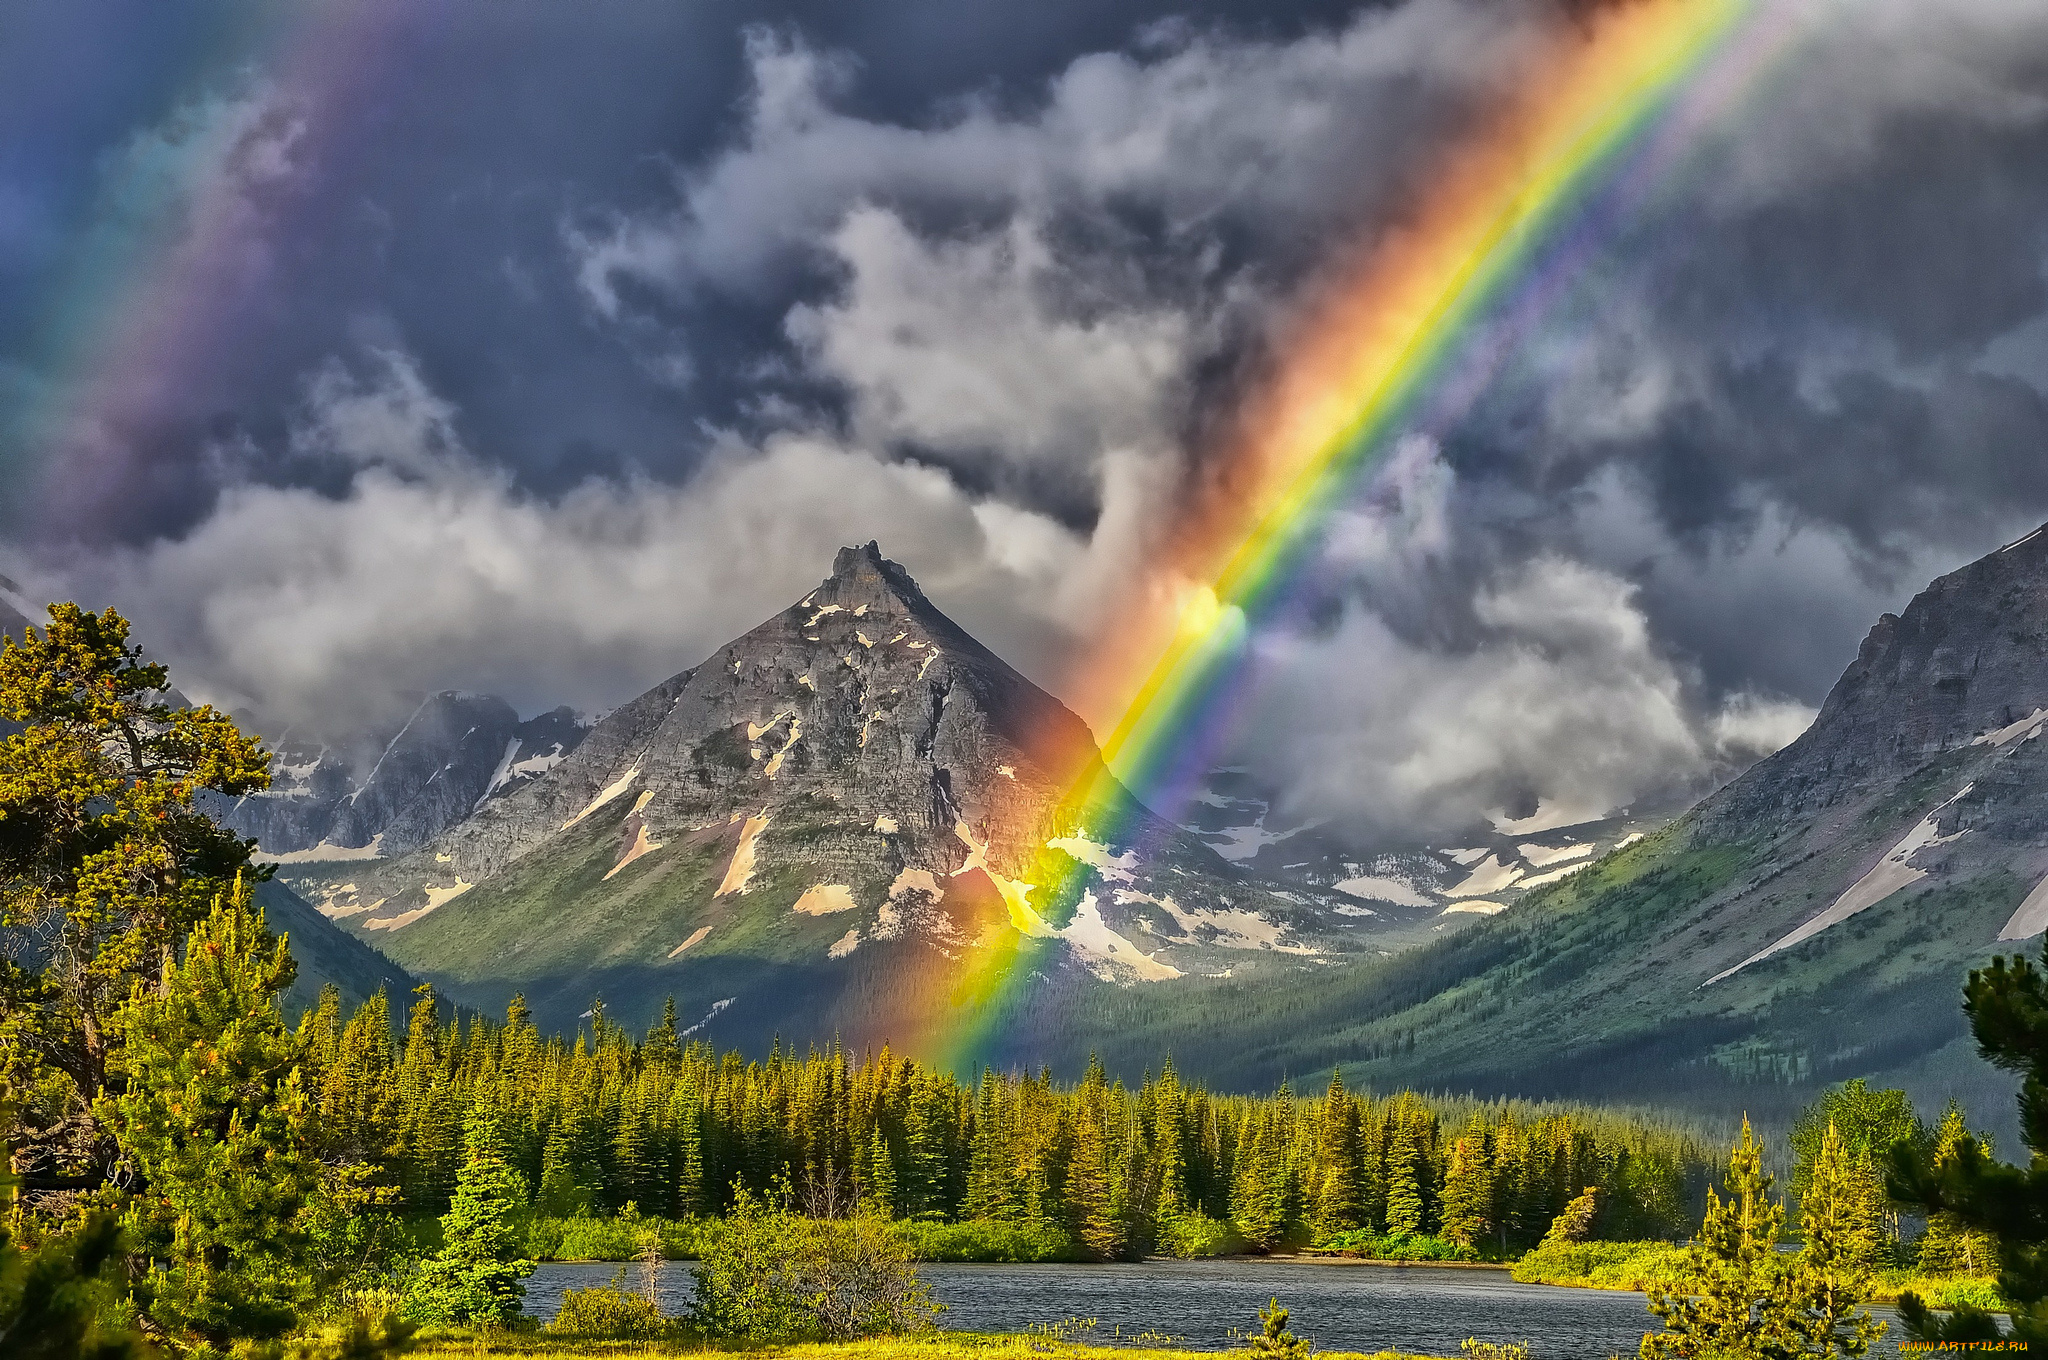 painted, teepee, peak, природа, радуга, пейзаж, горы, озеро